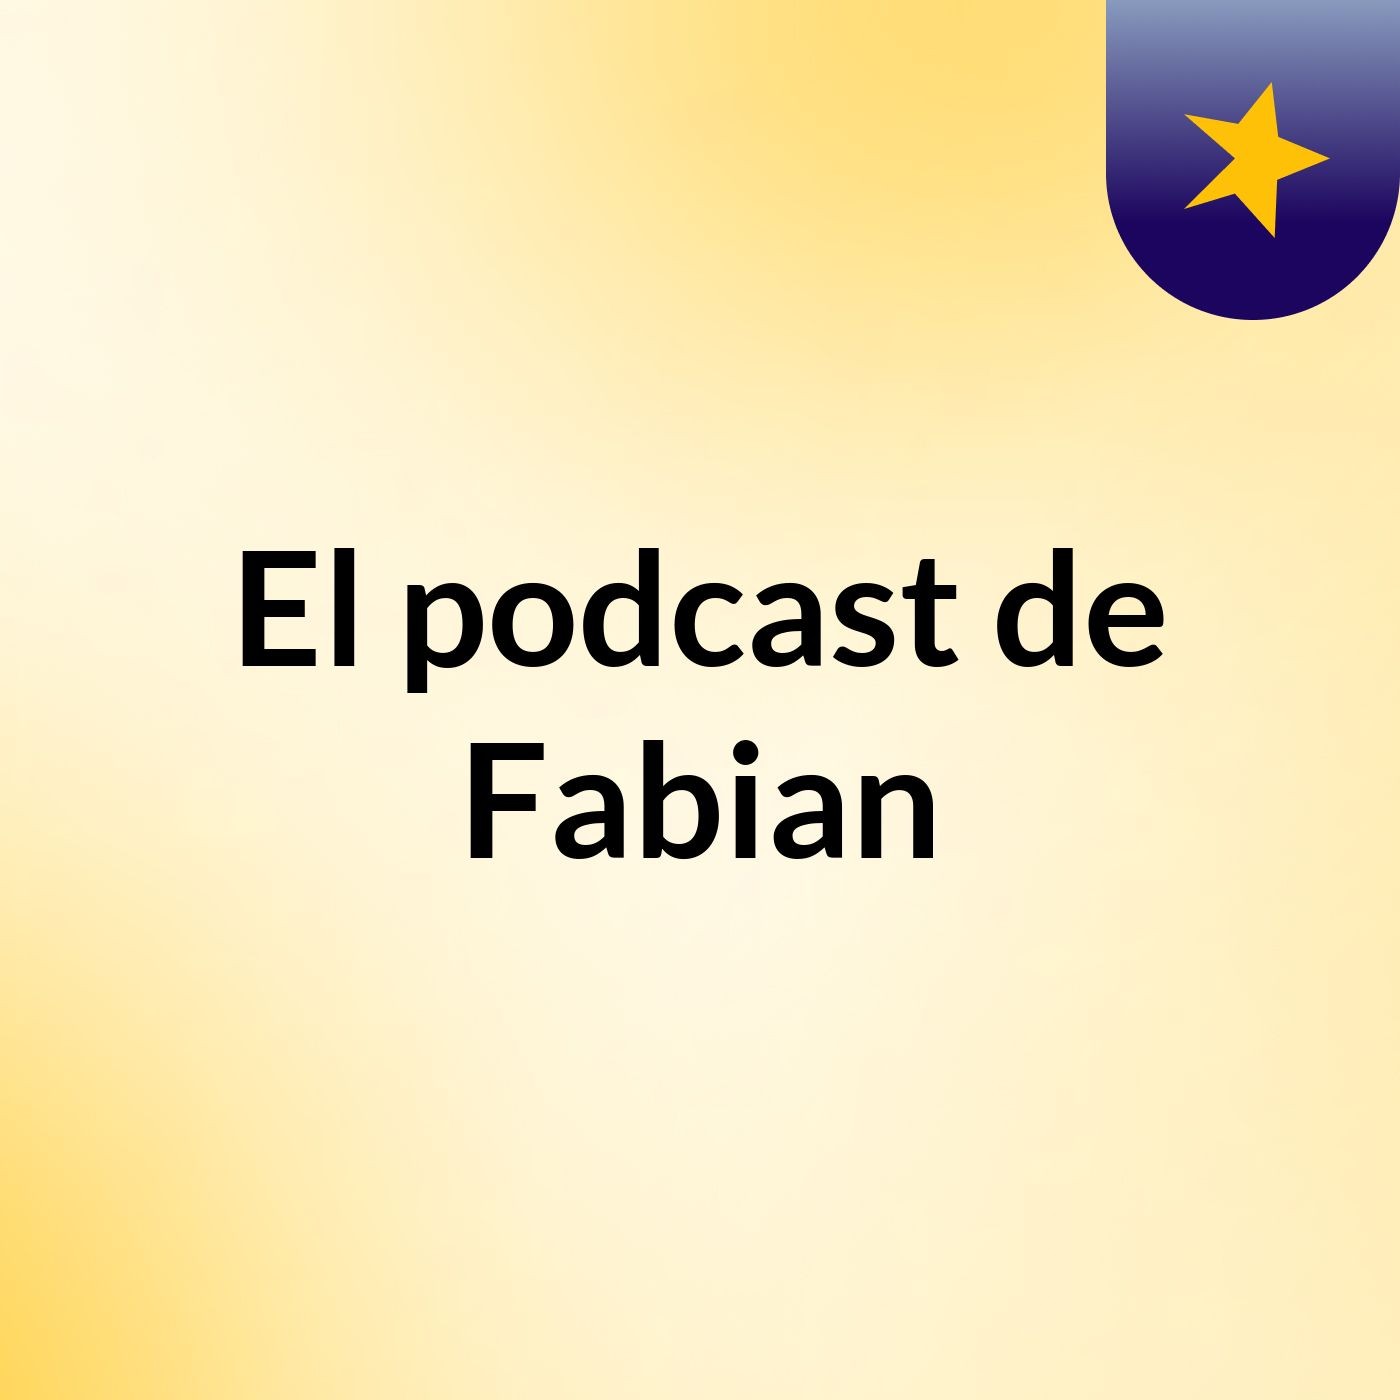 El podcast de Fabian